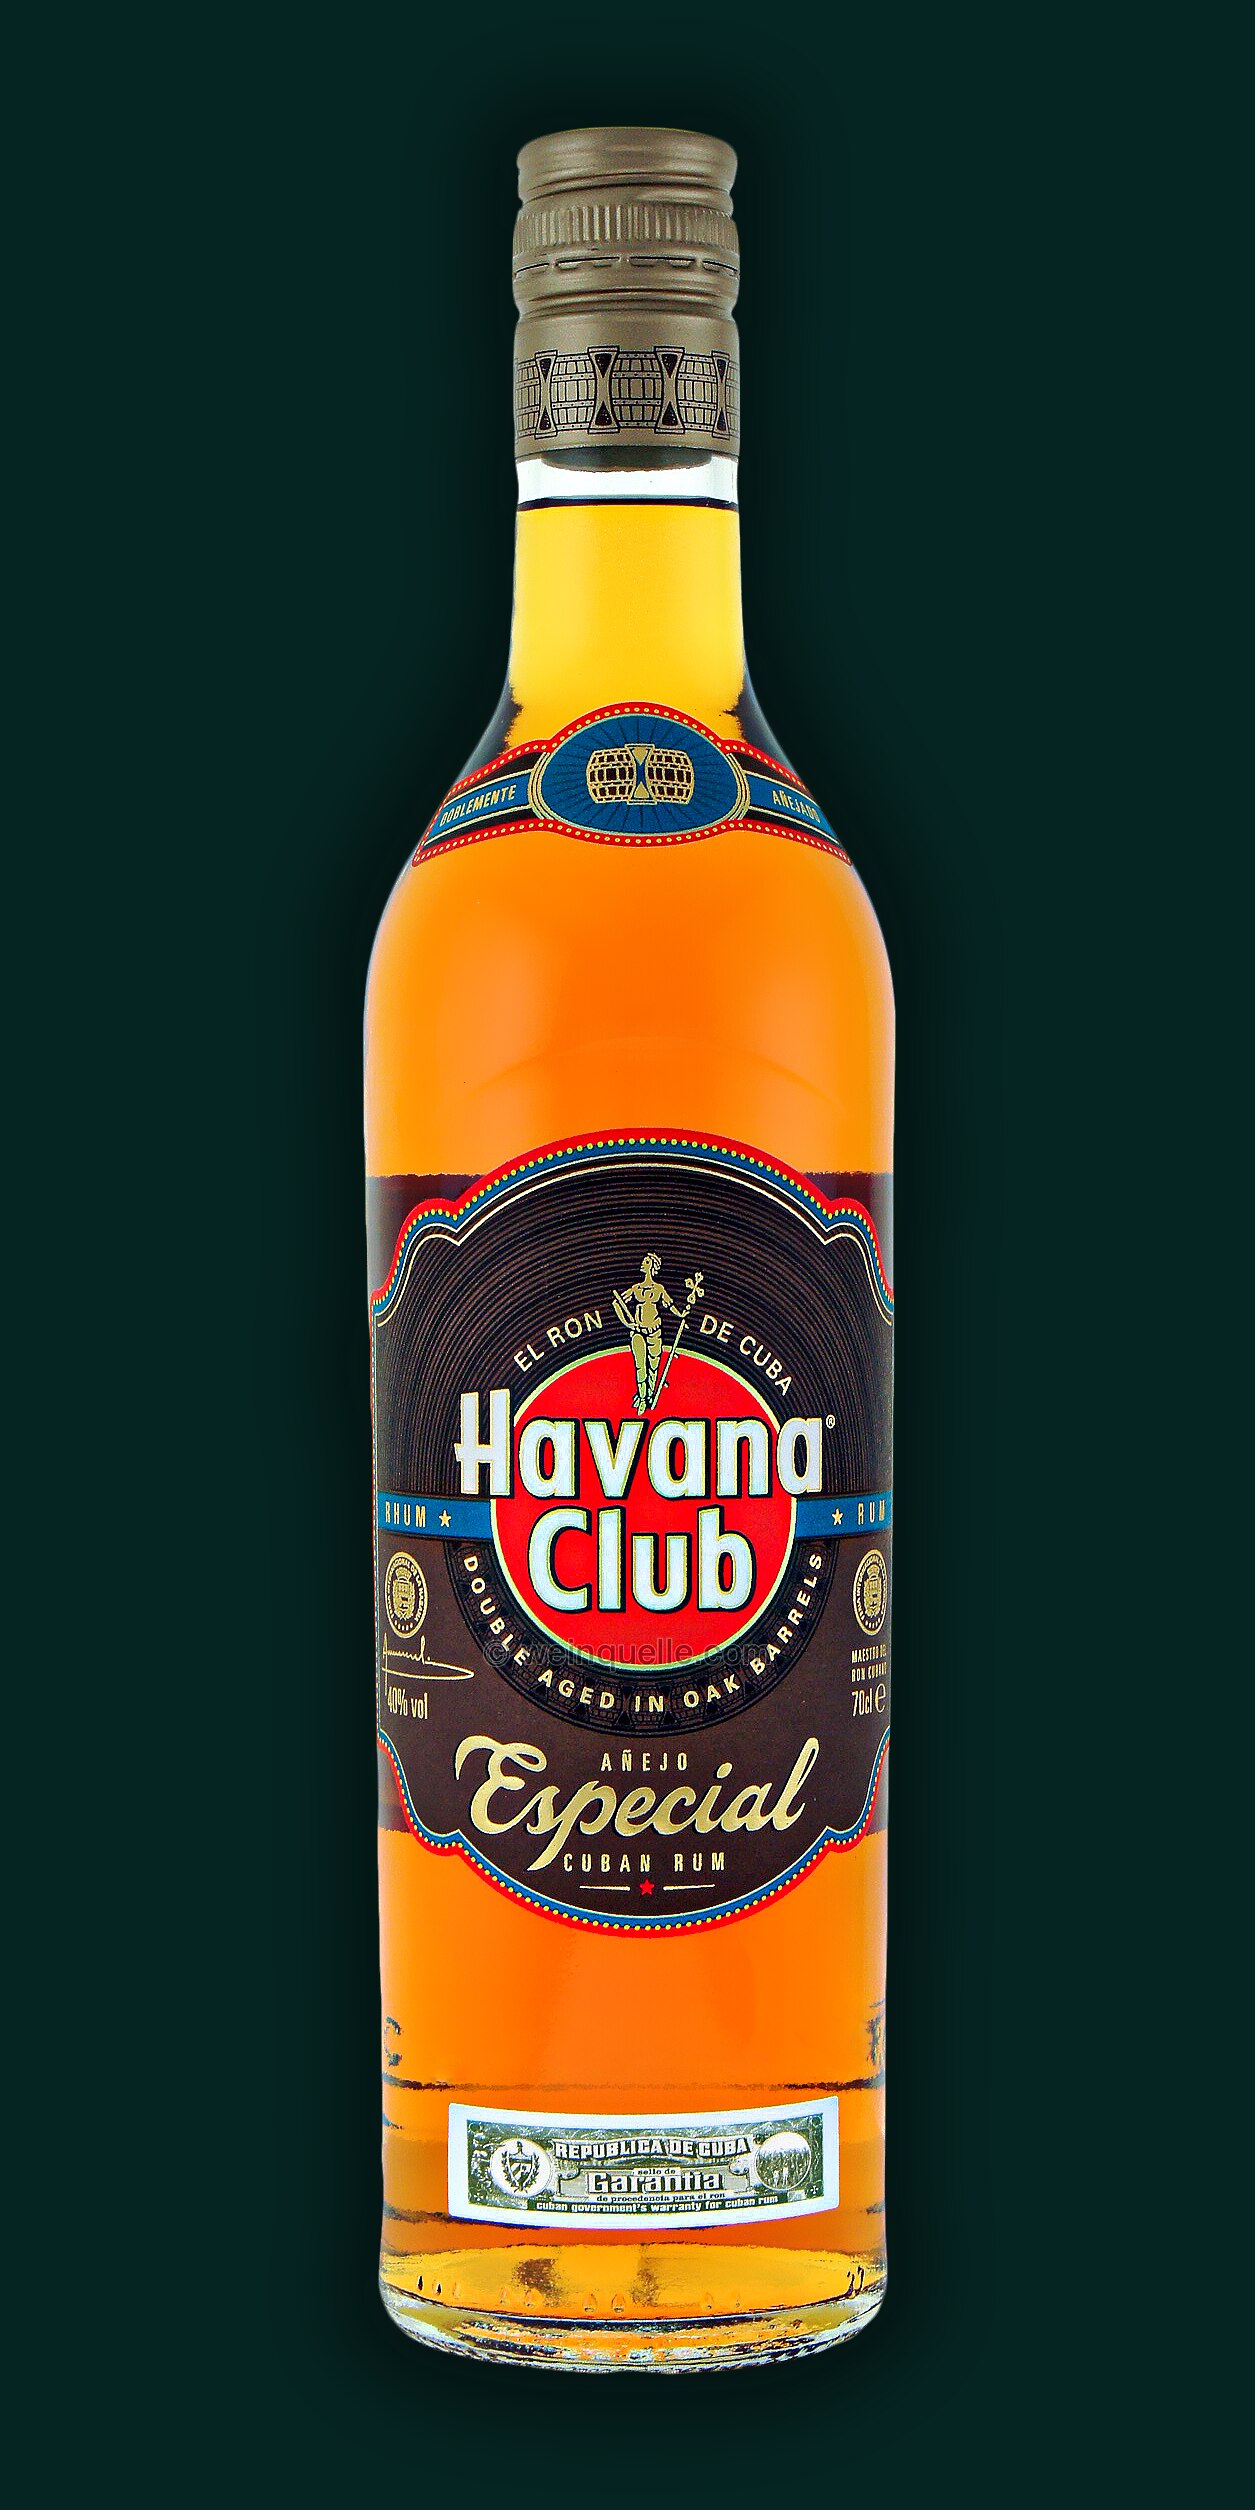 Havana Club Weinquelle Lühmann € 17,25 - Especial, Anejo